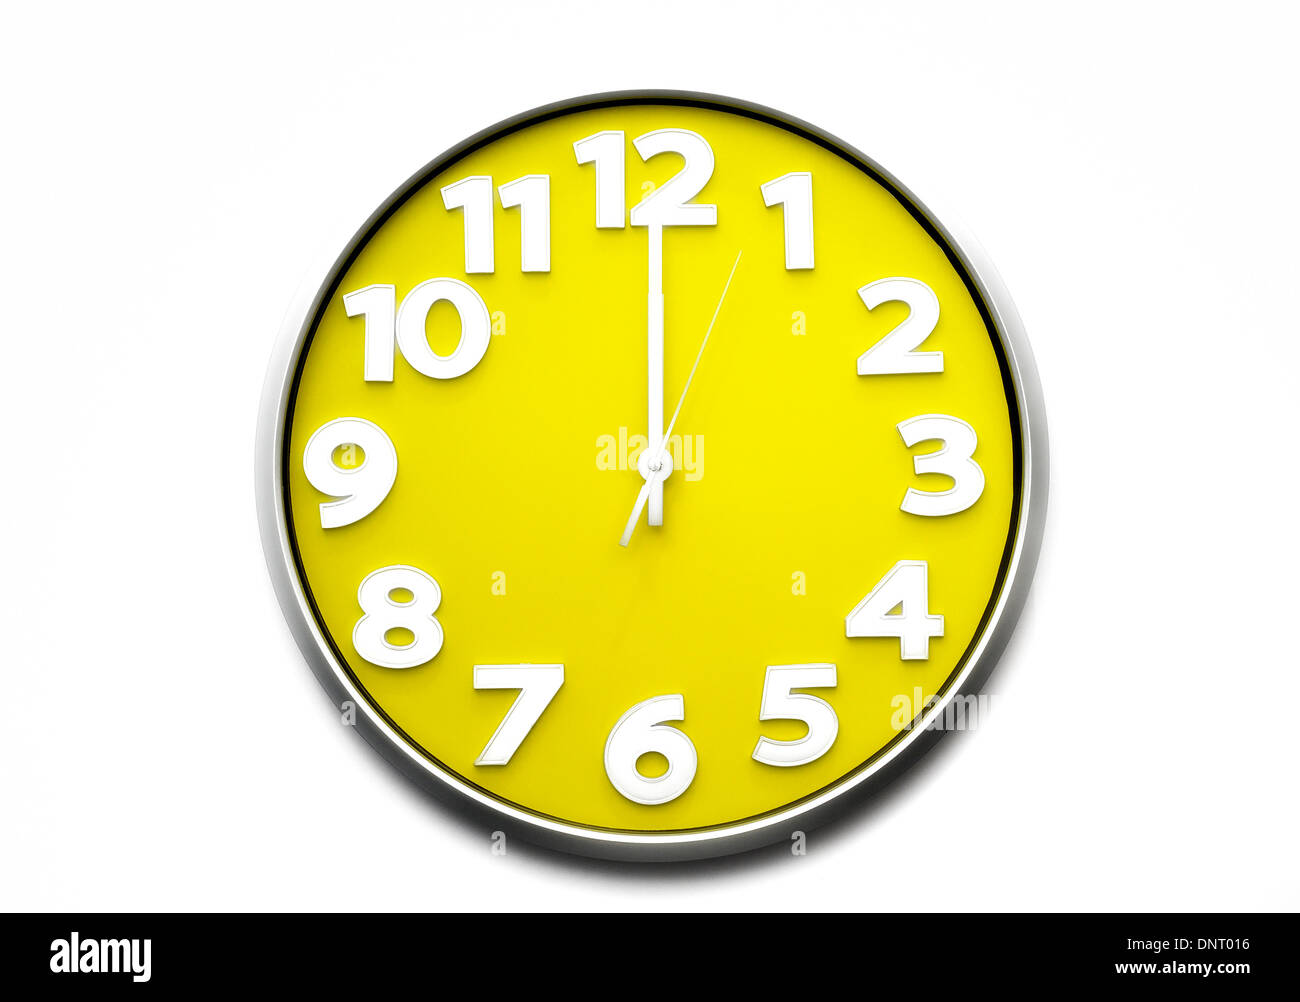 Gelbe Uhr Gesicht Mittag 12:00 Uhr schlägt zwölf 12 Mitternacht 00.00  Stockfotografie - Alamy